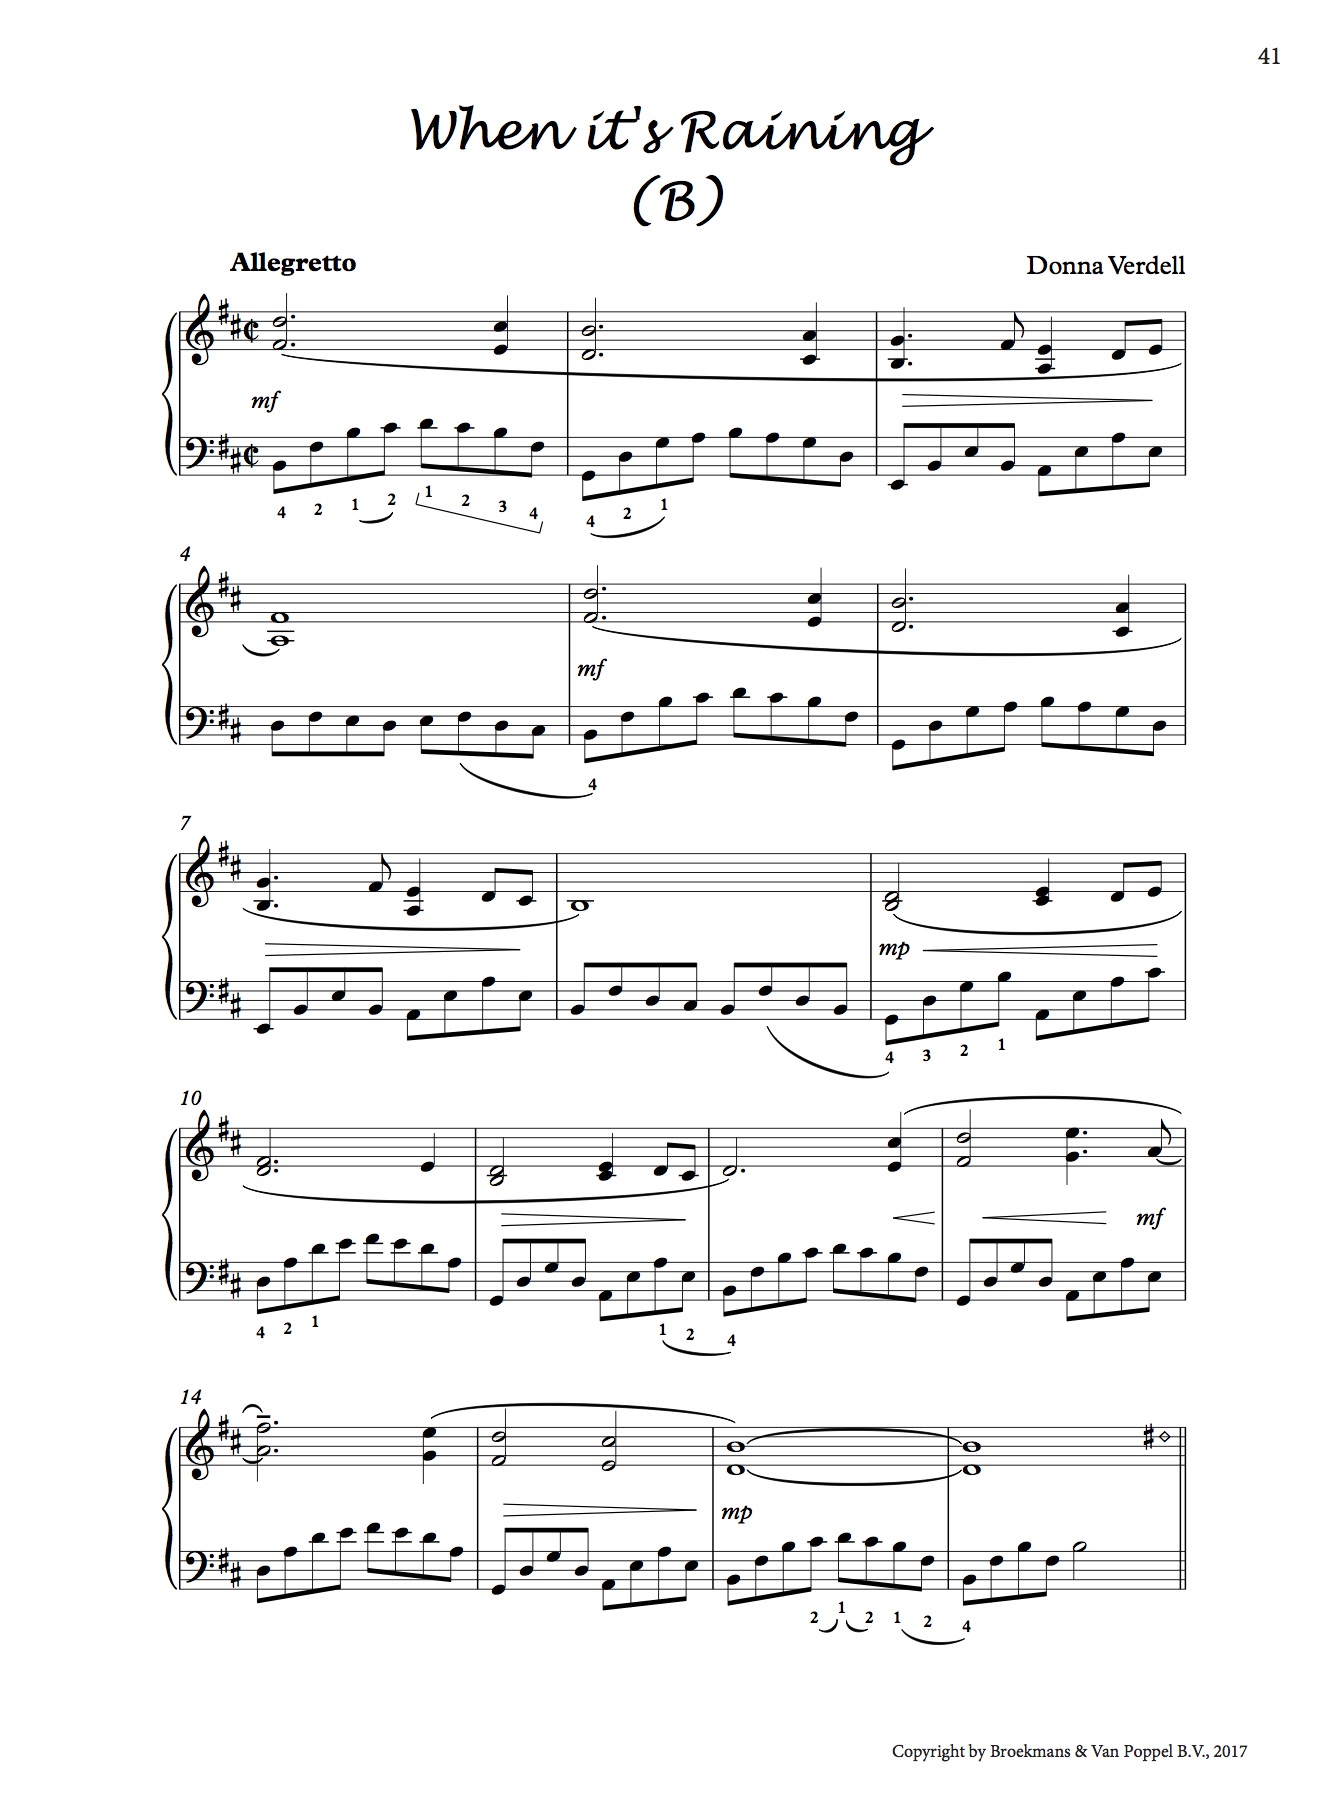 Donna Verdell - When it's Raining (B) for Harp